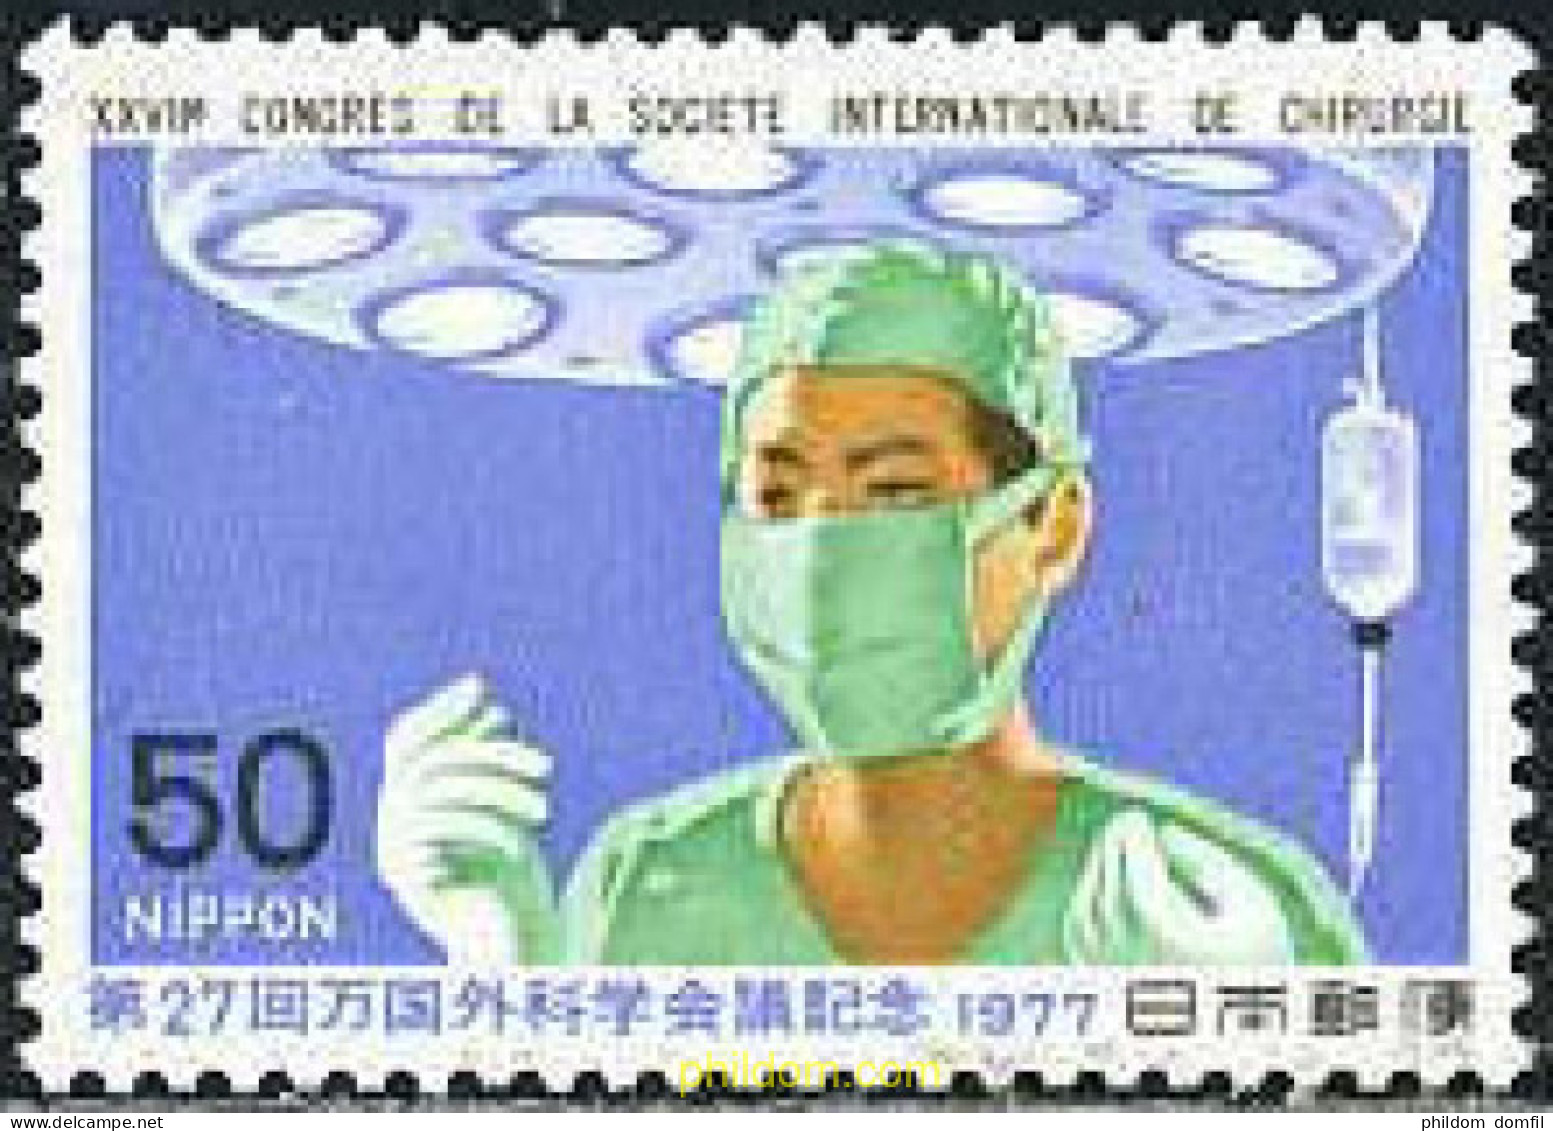 154917 MNH JAPON 1977 27 CONGRESO DE LA SOCIEDAD INTERNACIONAL DE LOS CIRUGIANOS - Unused Stamps